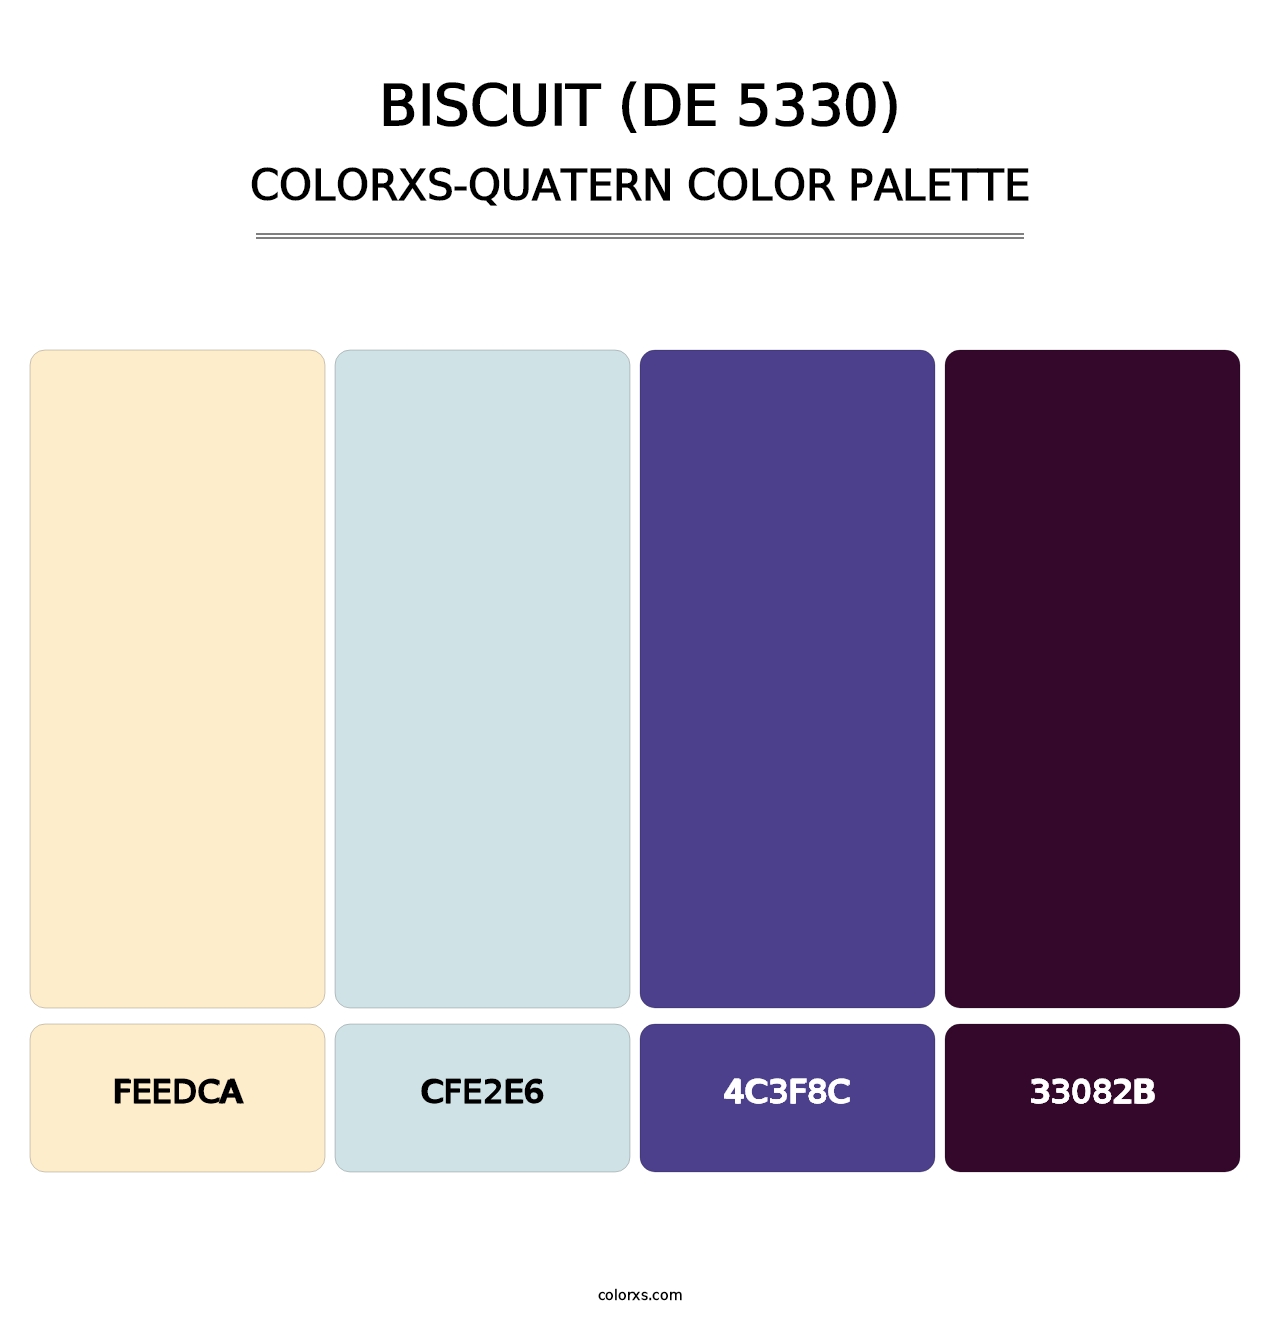 Biscuit (DE 5330) - Colorxs Quatern Palette